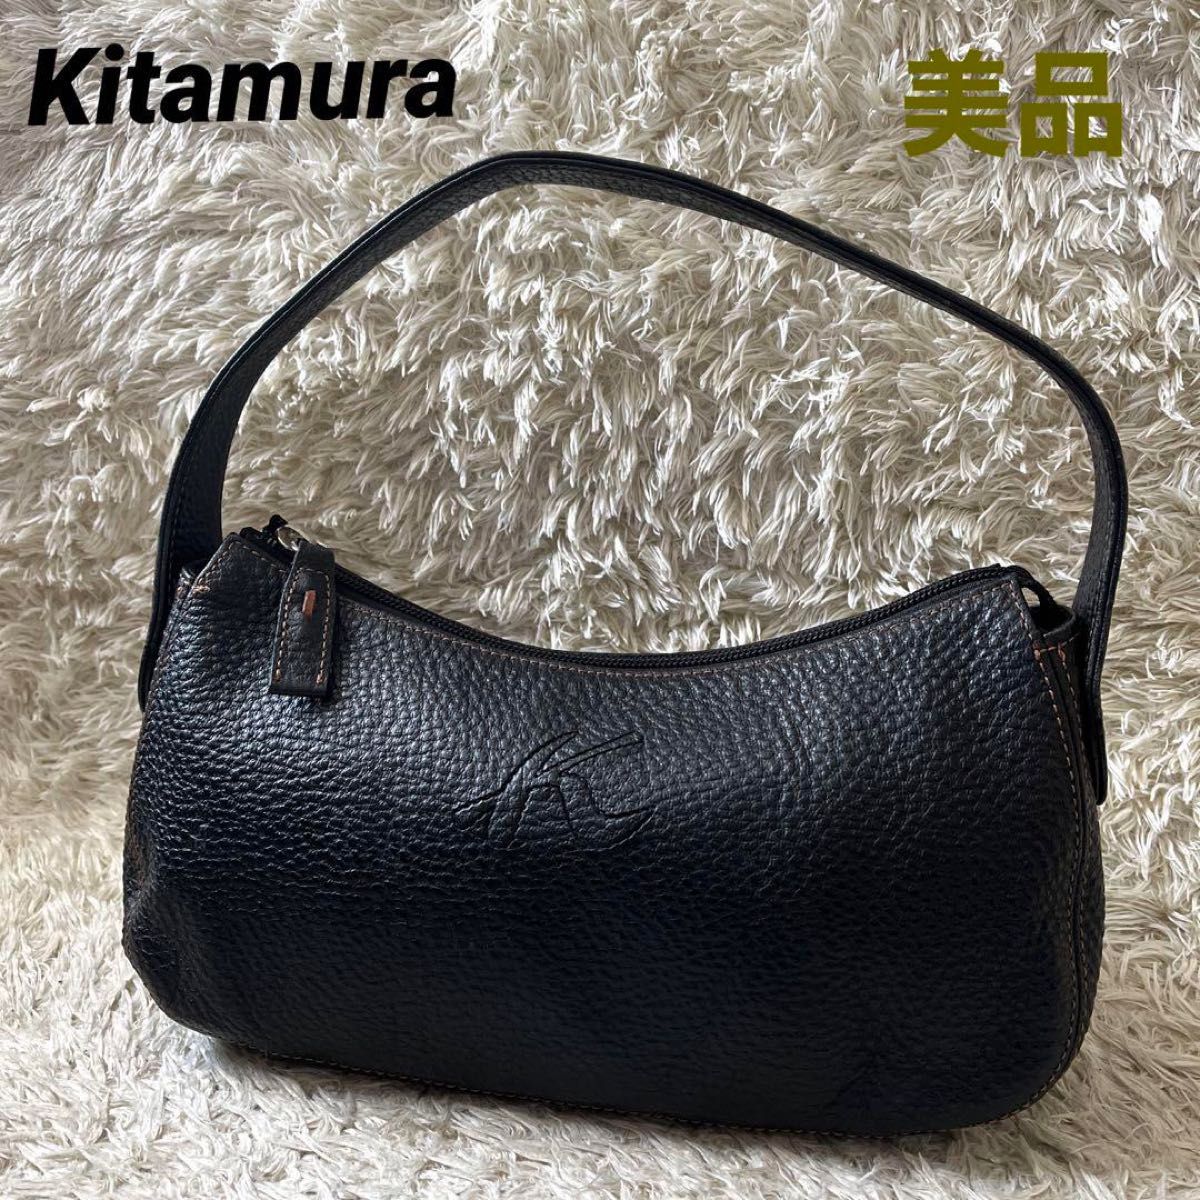 Kitamura キタムラ ハンドバッグ ワンハンドル 肩掛け ステッチ レザー ブラック黒